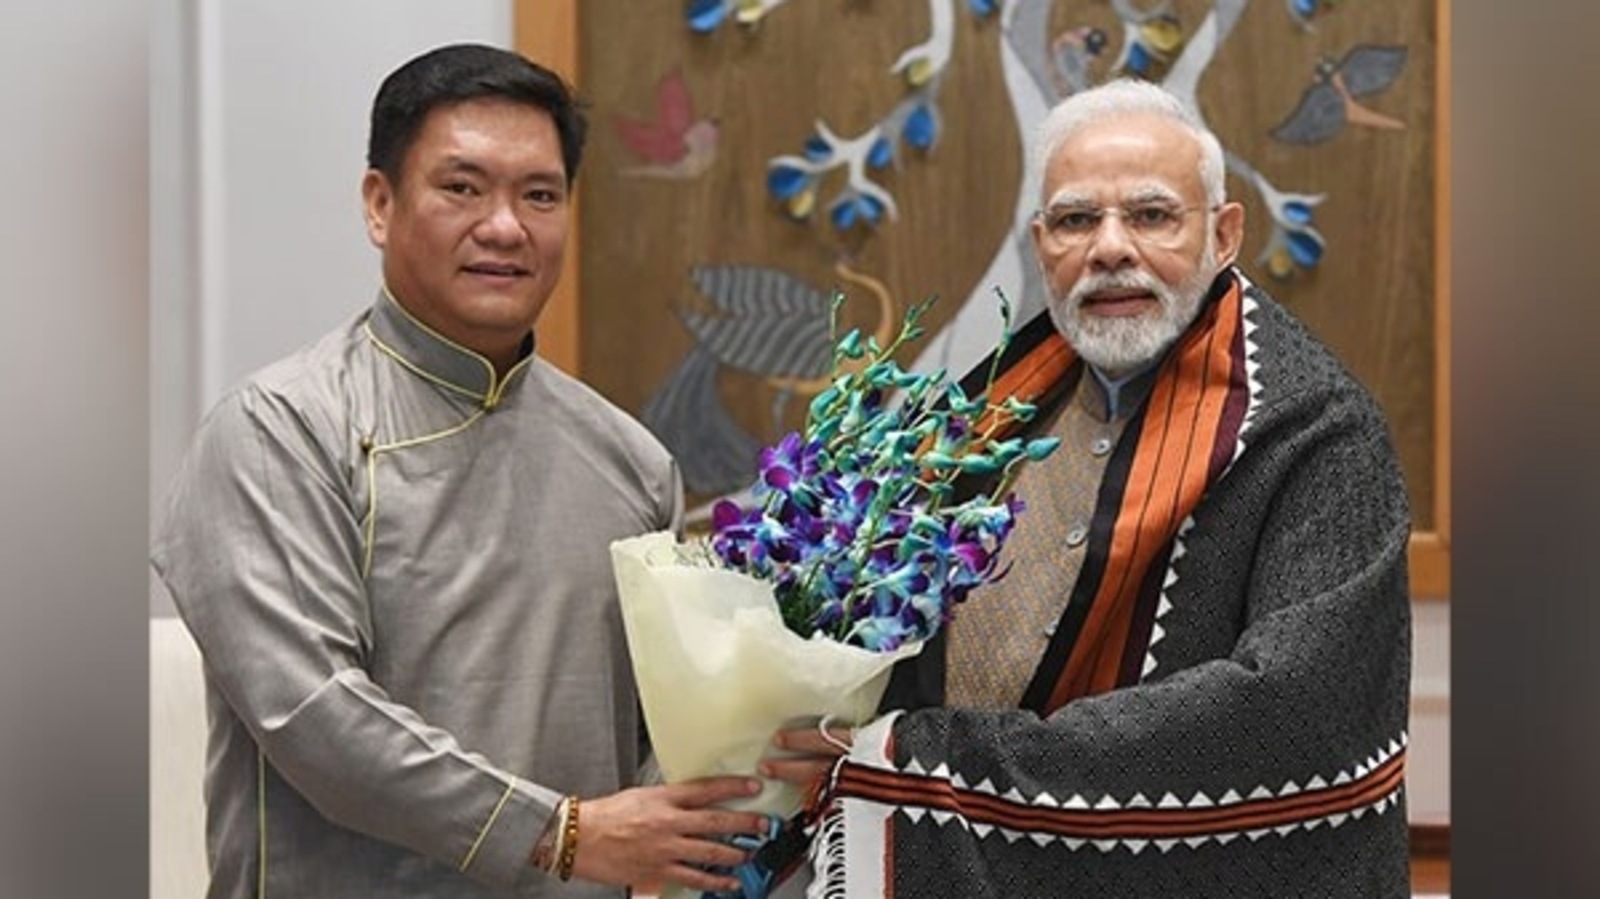 PM Modi to gift cheetahs to India on his birthday! - Oneindia News